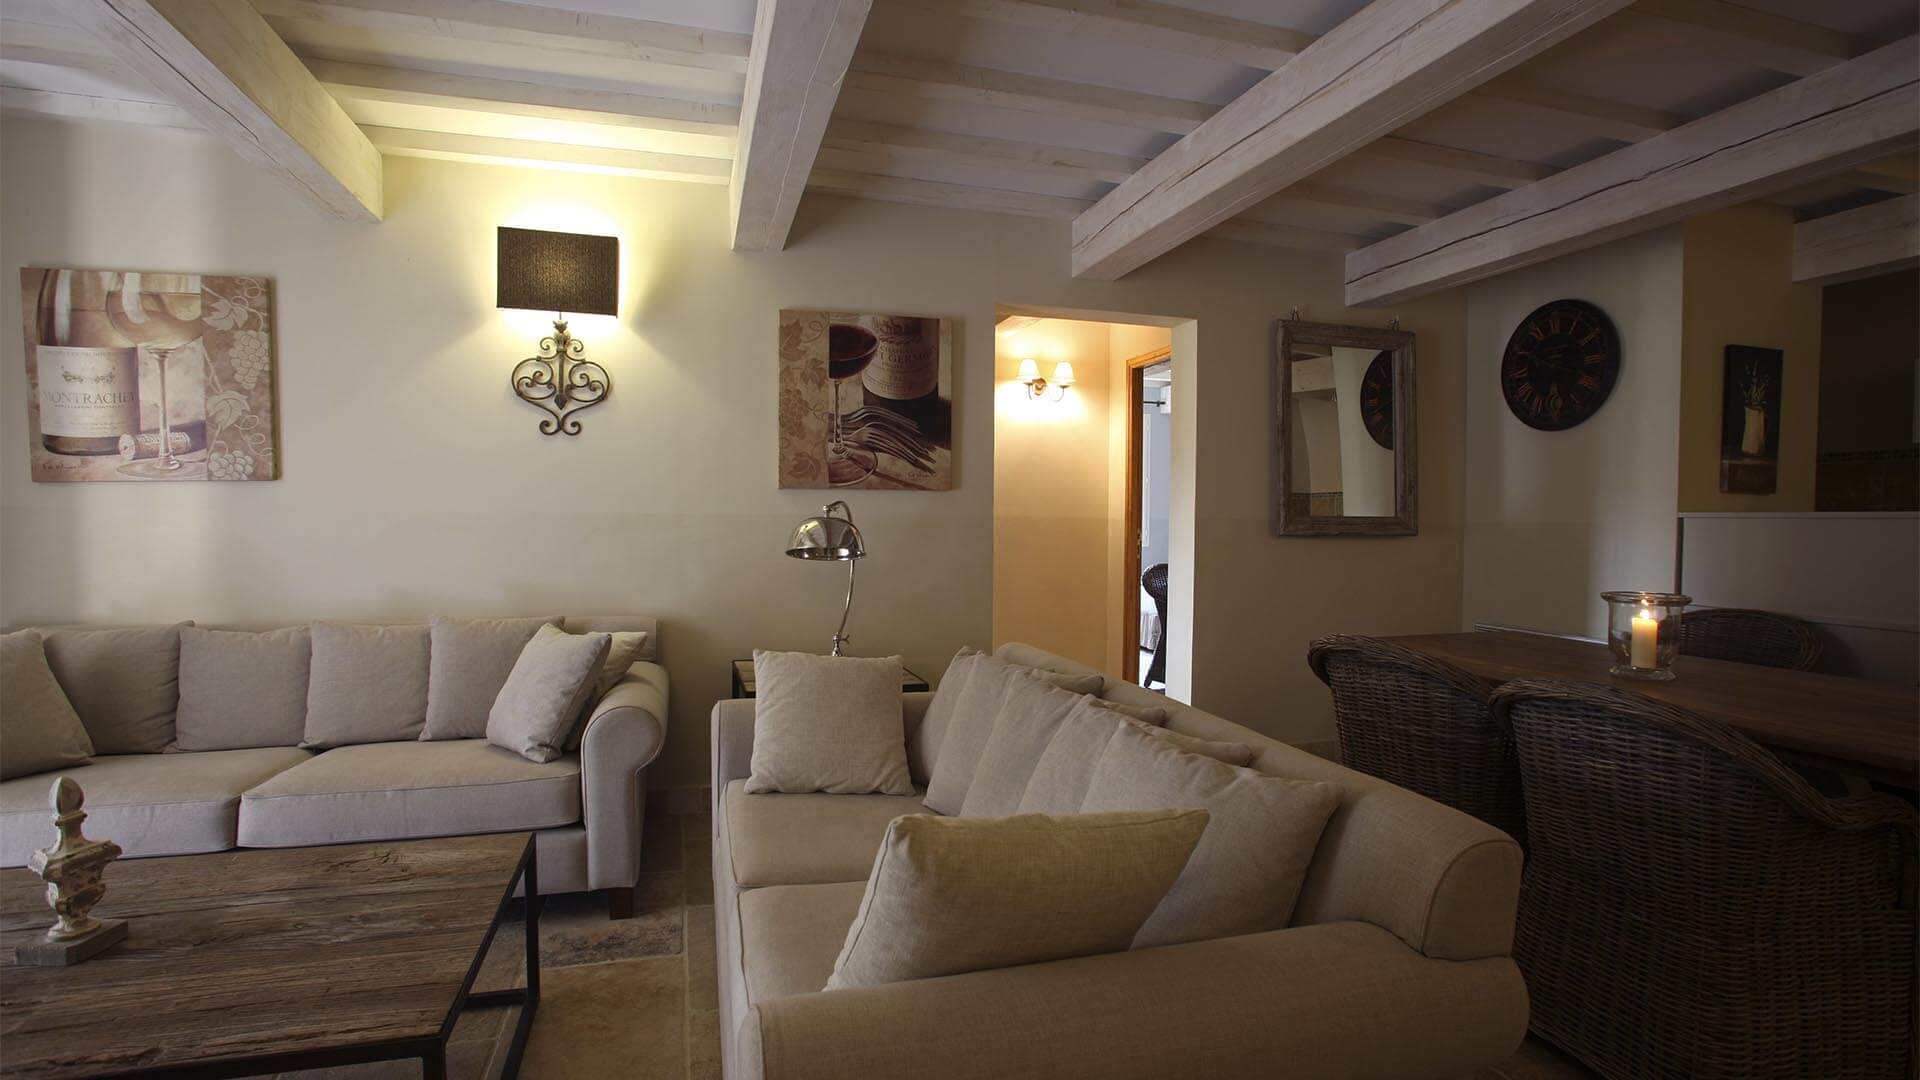 Location vacances Provence | Appartement le jas des collines | Salon, salle à manger